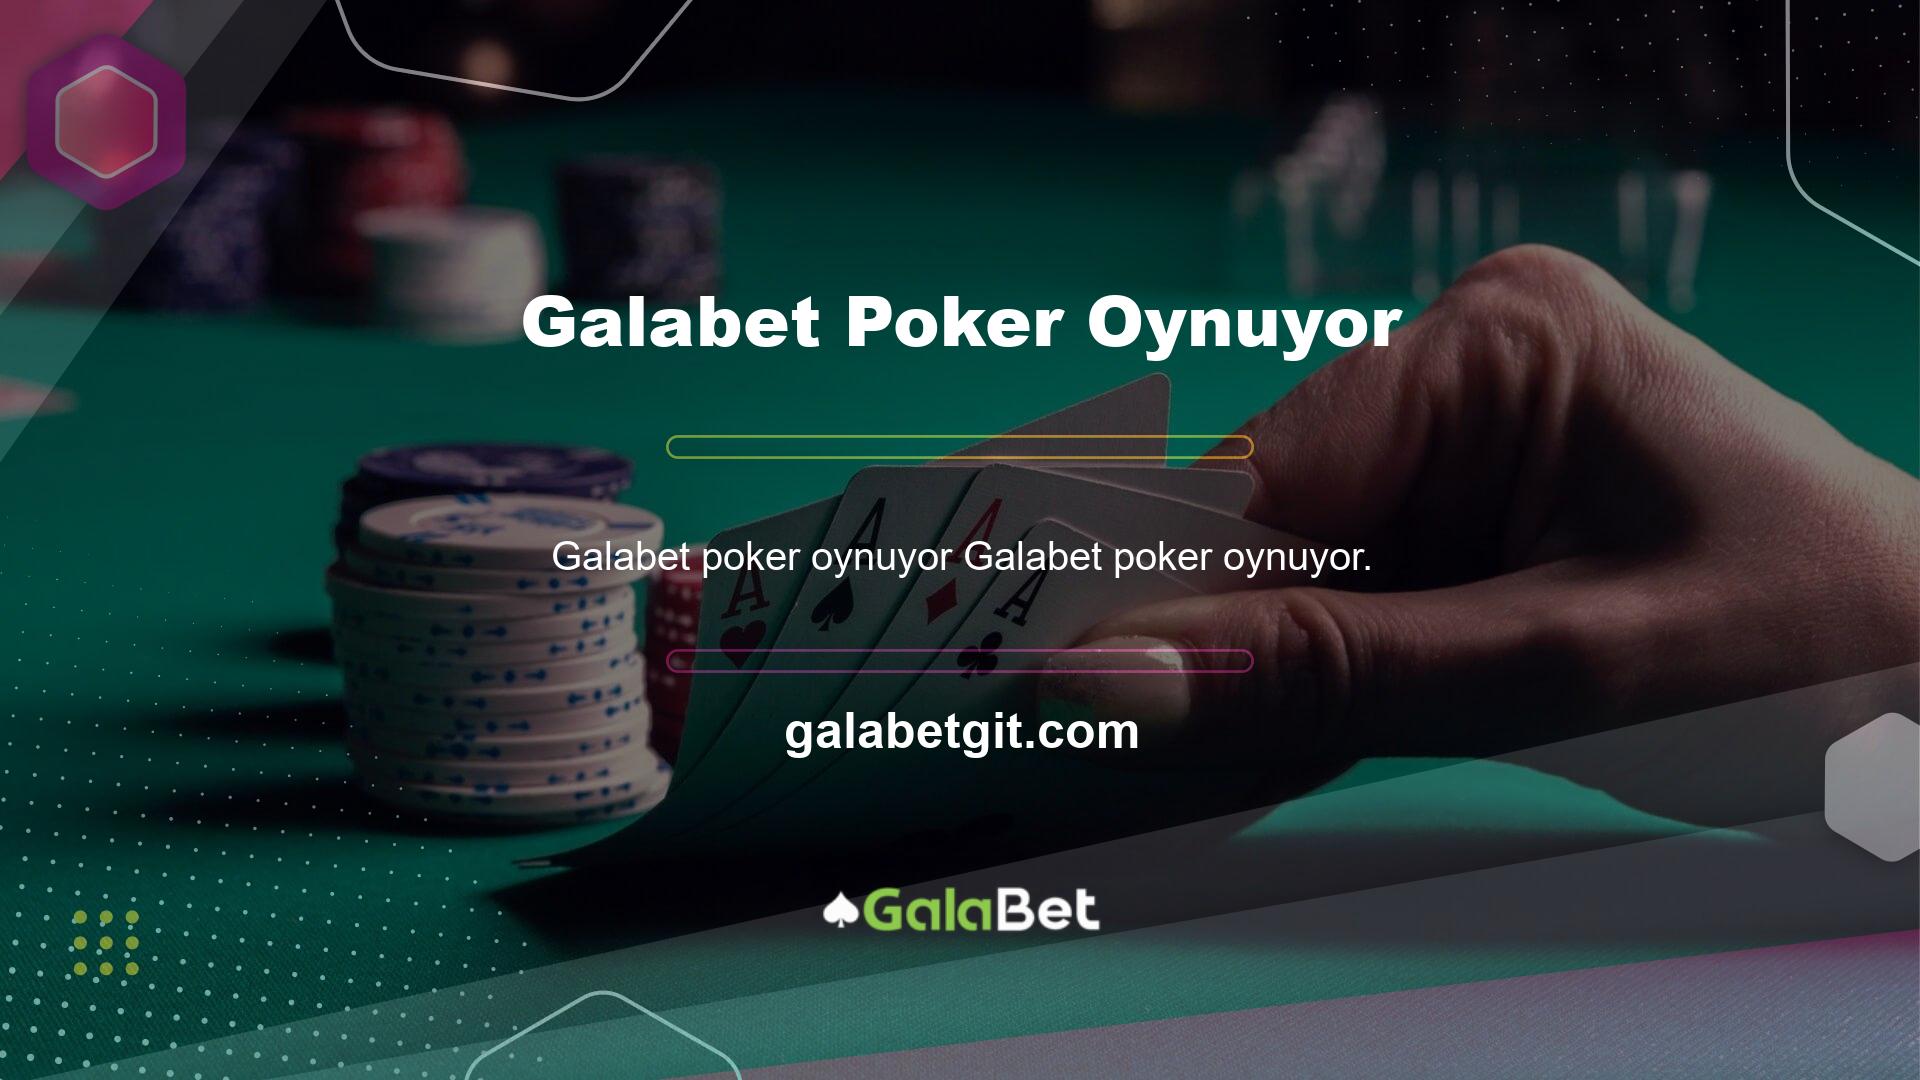 Poker sahnesinde Galabet Poker oynadığınızda hızlı sistemleri öğrenirken her zaman aktif kalma fırsatına sahip olursunuz